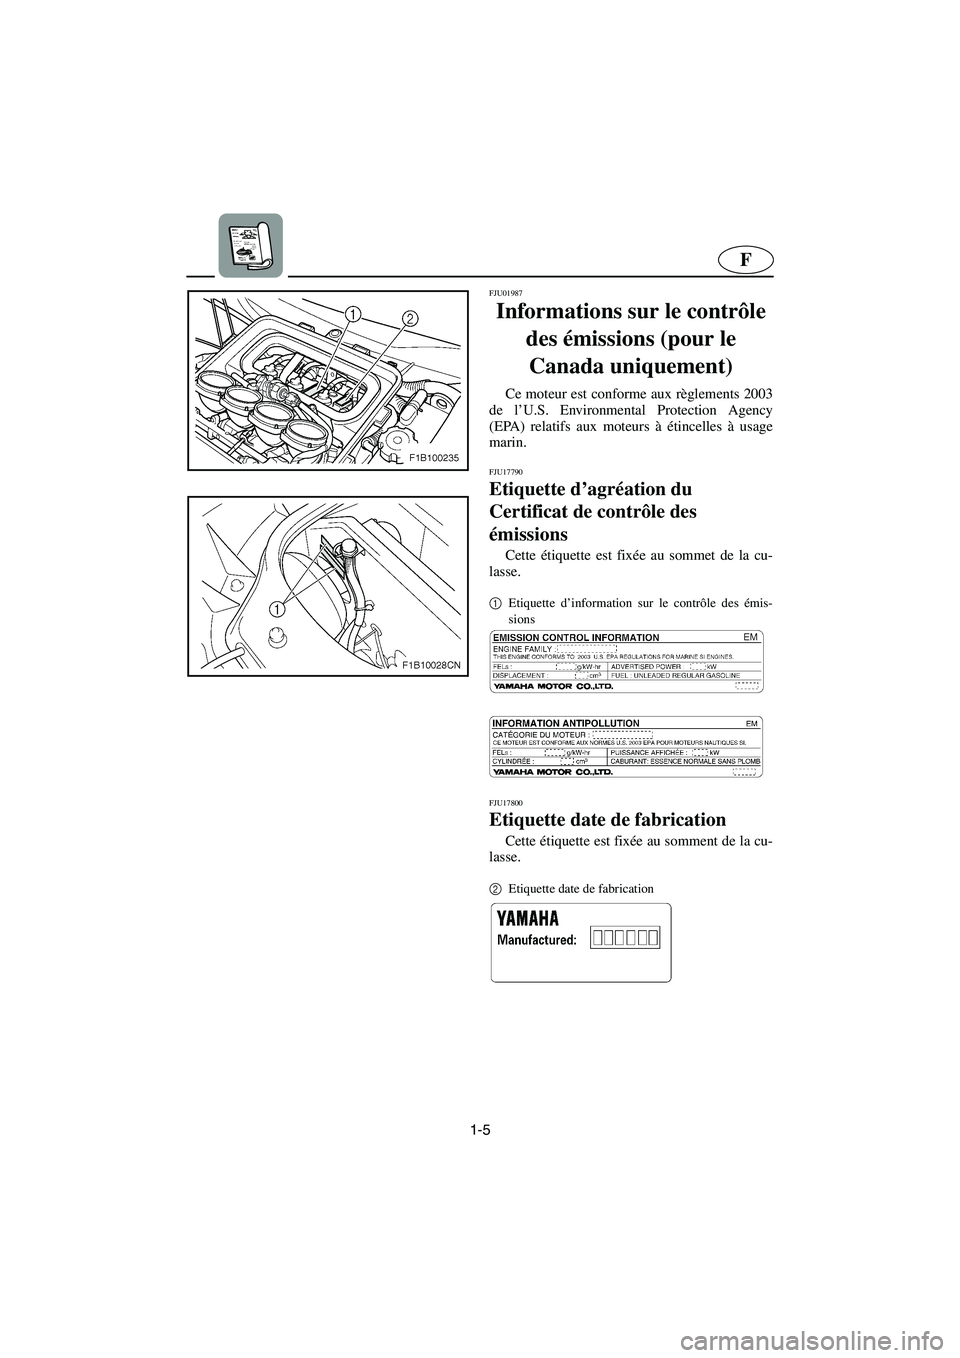 YAMAHA FX 2003  Notices Demploi (in French) 1-5
F
FJU01987
Informations sur le contrôle 
des émissions (pour le 
Canada uniquement) 
Ce moteur est conforme aux règlements 2003
de l’U.S. Environmental Protection Agency
(EPA) relatifs aux mo